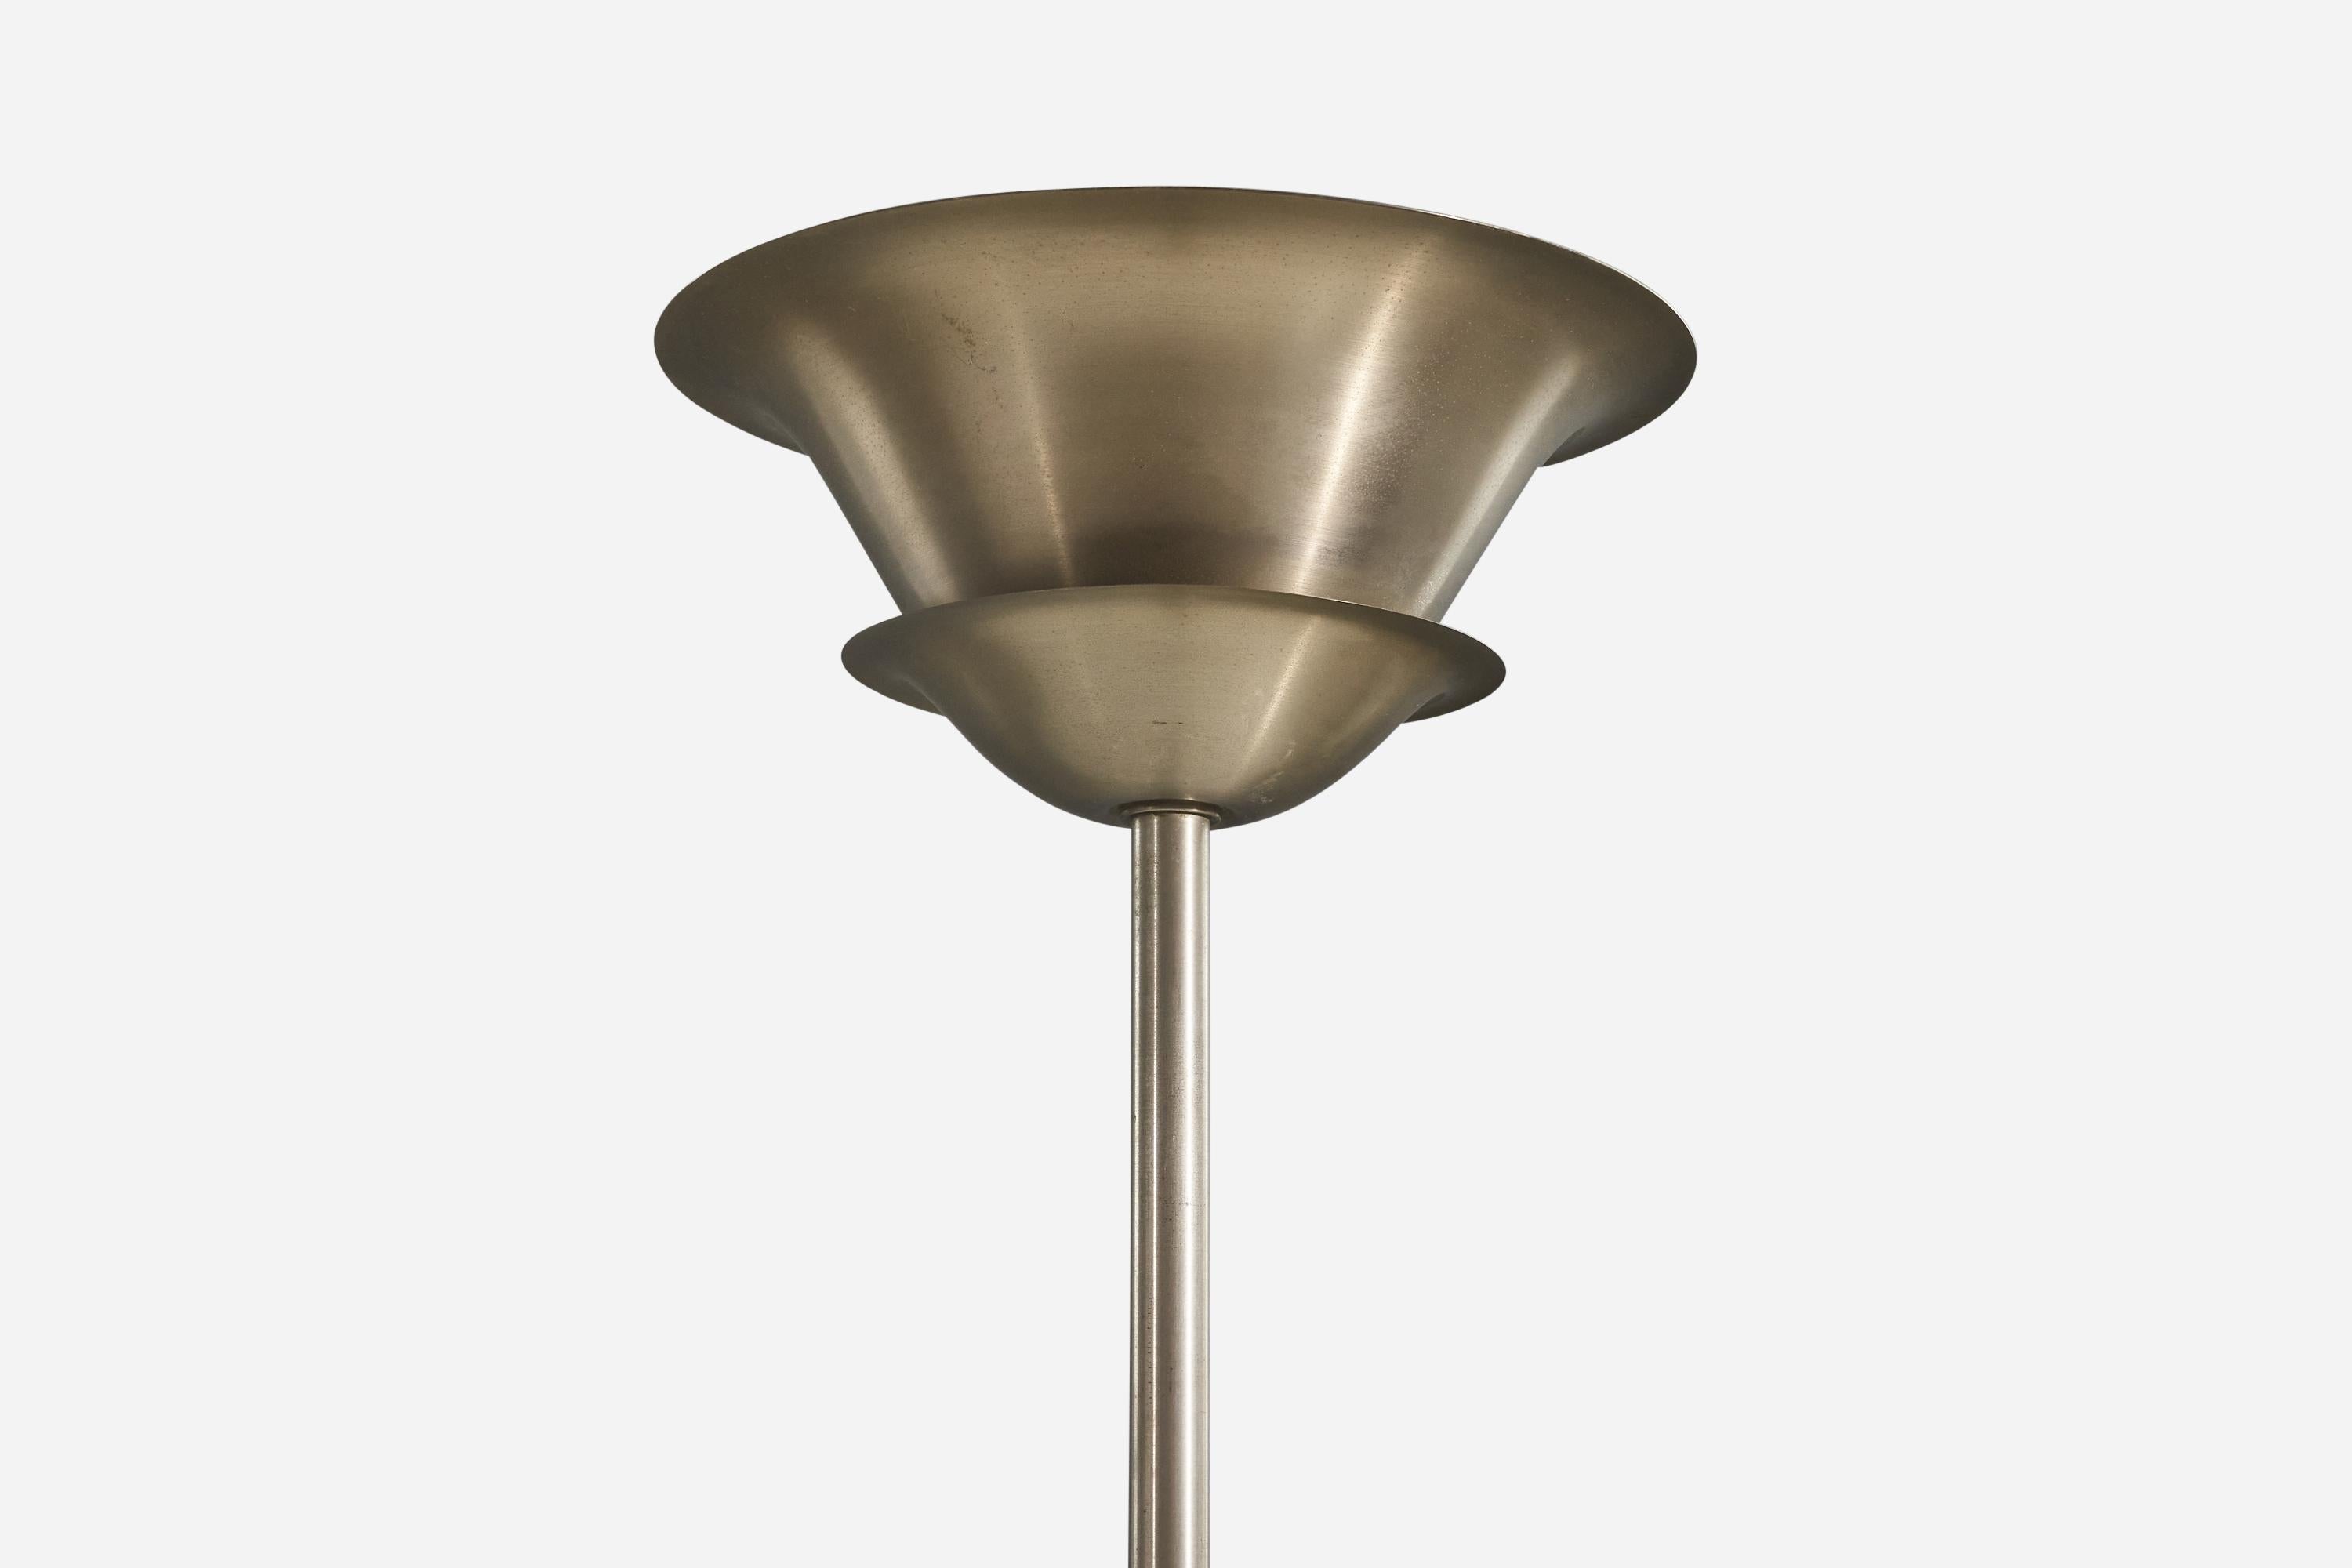 Mid-20th Century German Designer, Functionalist Floor Lamp, Stainless Steel, Germany, c. 1940s